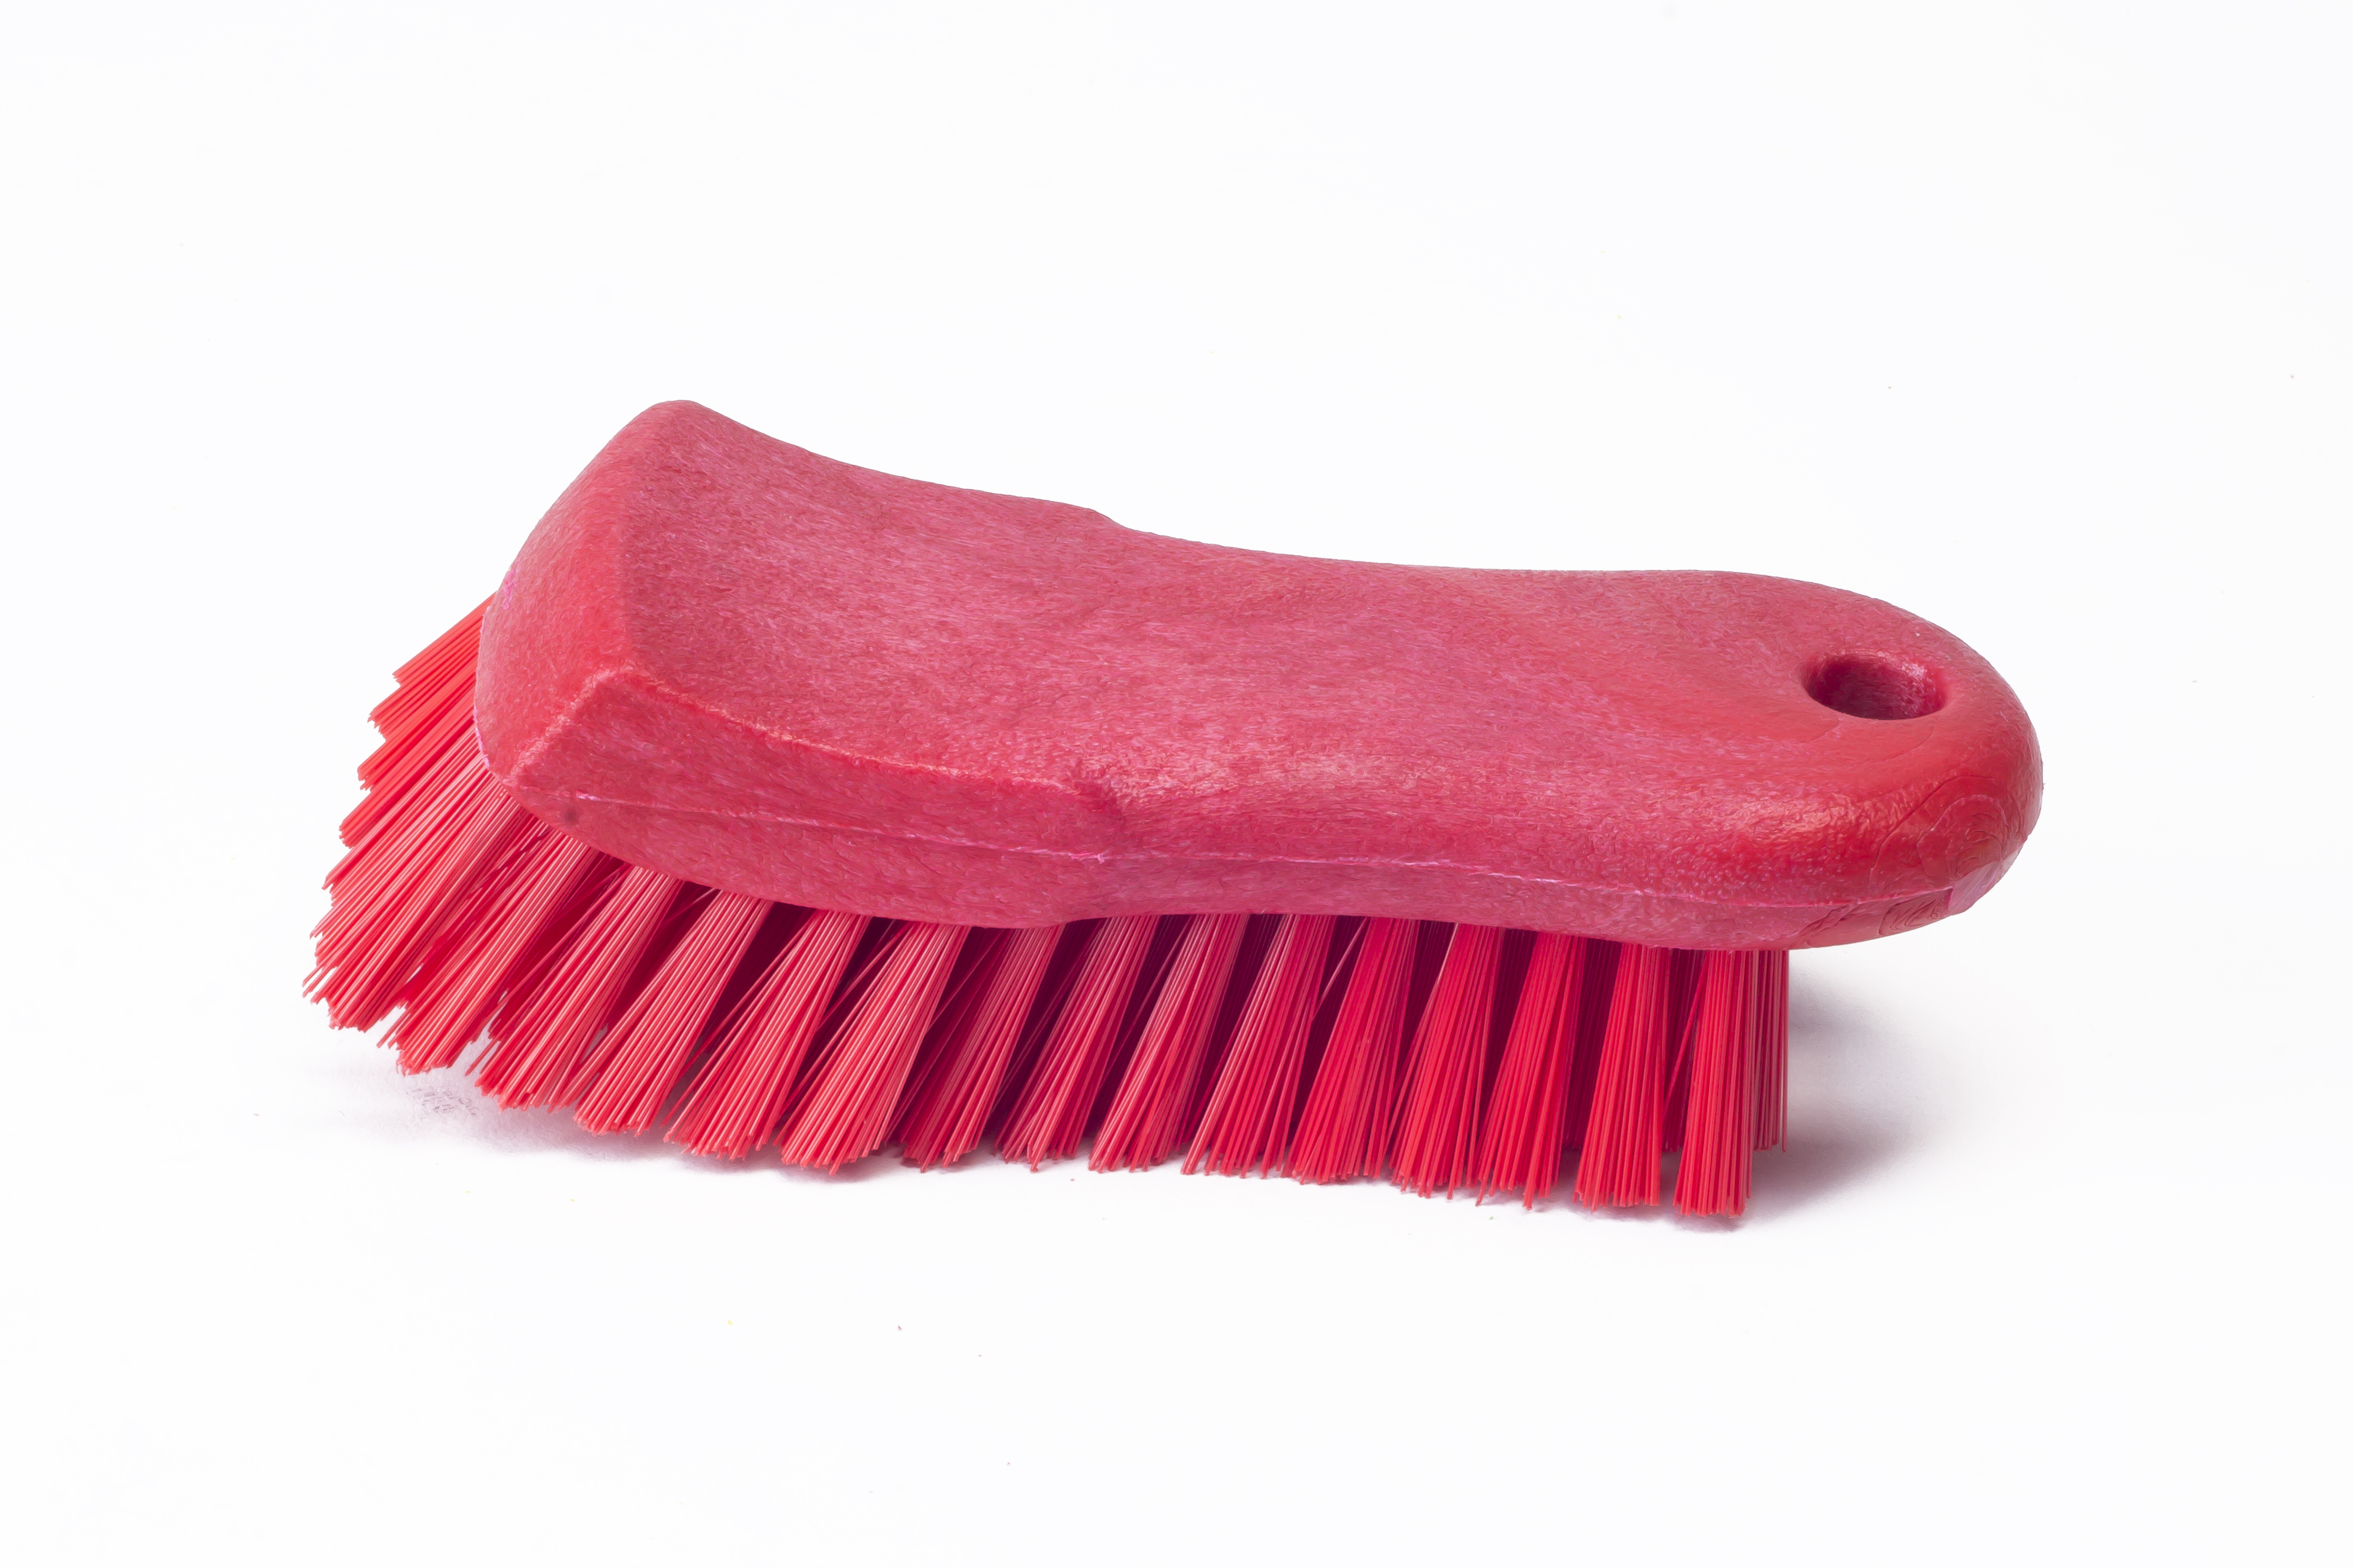 Щетка HACCPER для мытья разделочных досок, рабочих поверхностей, жесткая, 153 мм, красная